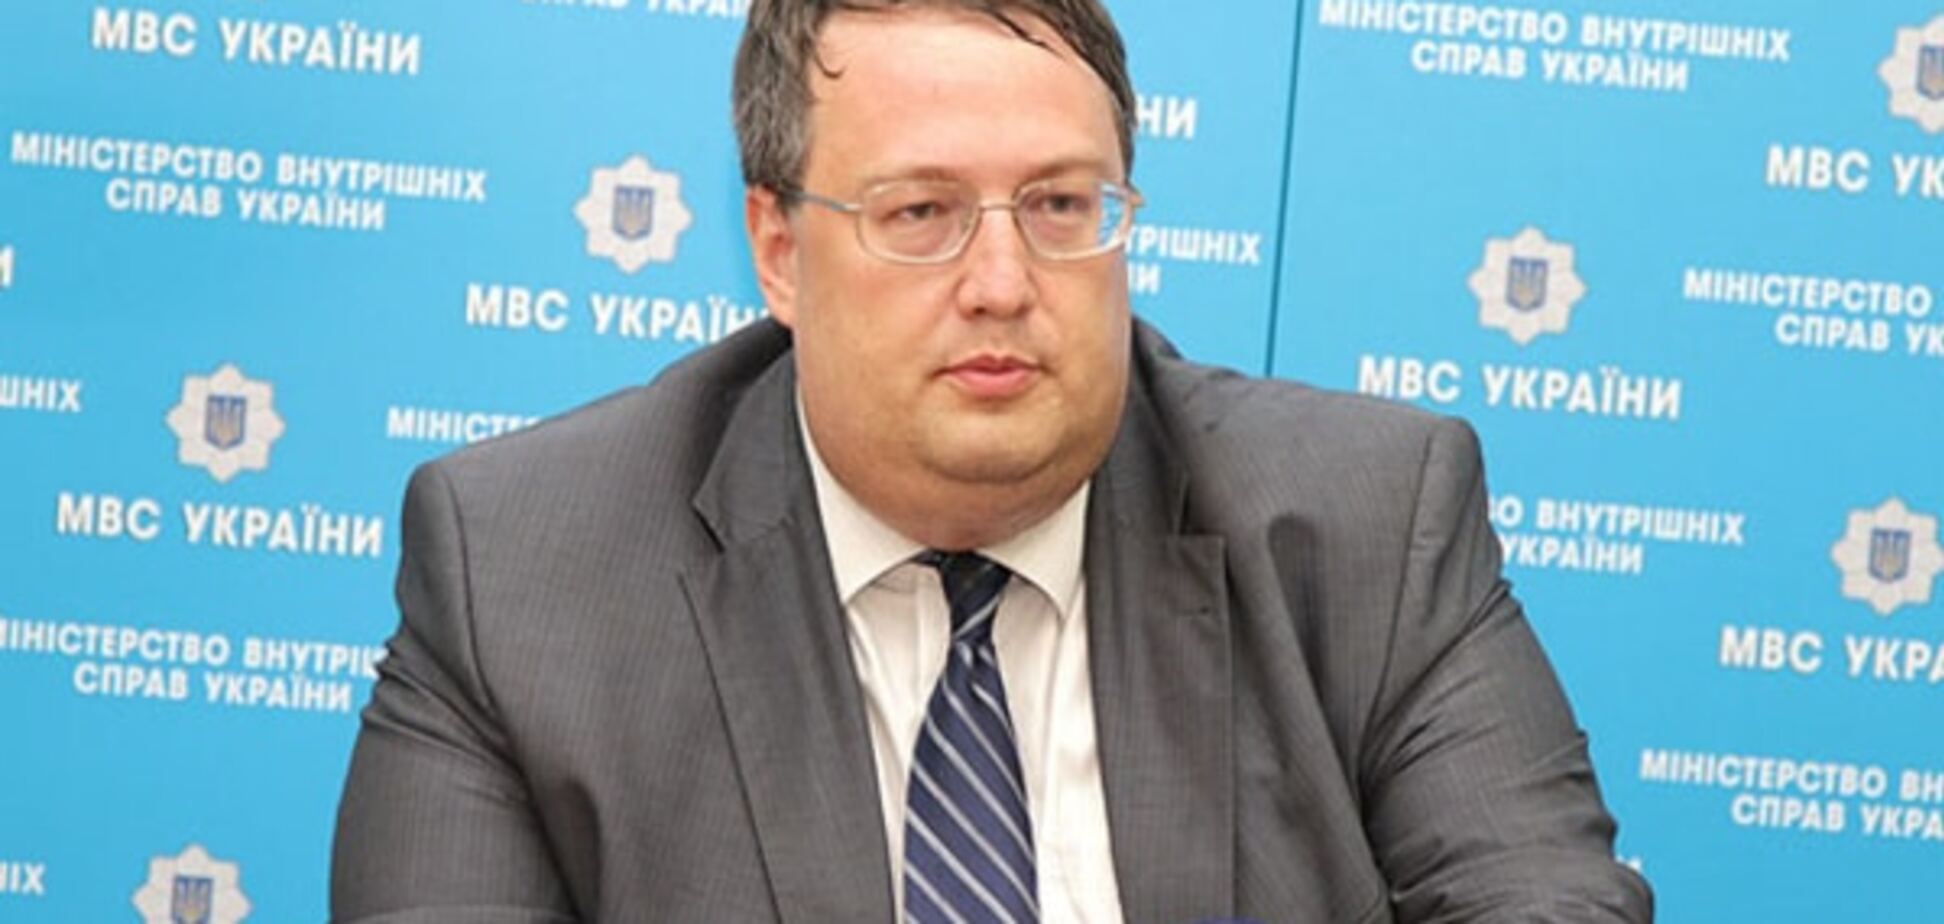 Геращенко: схему подкупа избирателей в Днепропетровске организовали в Москве